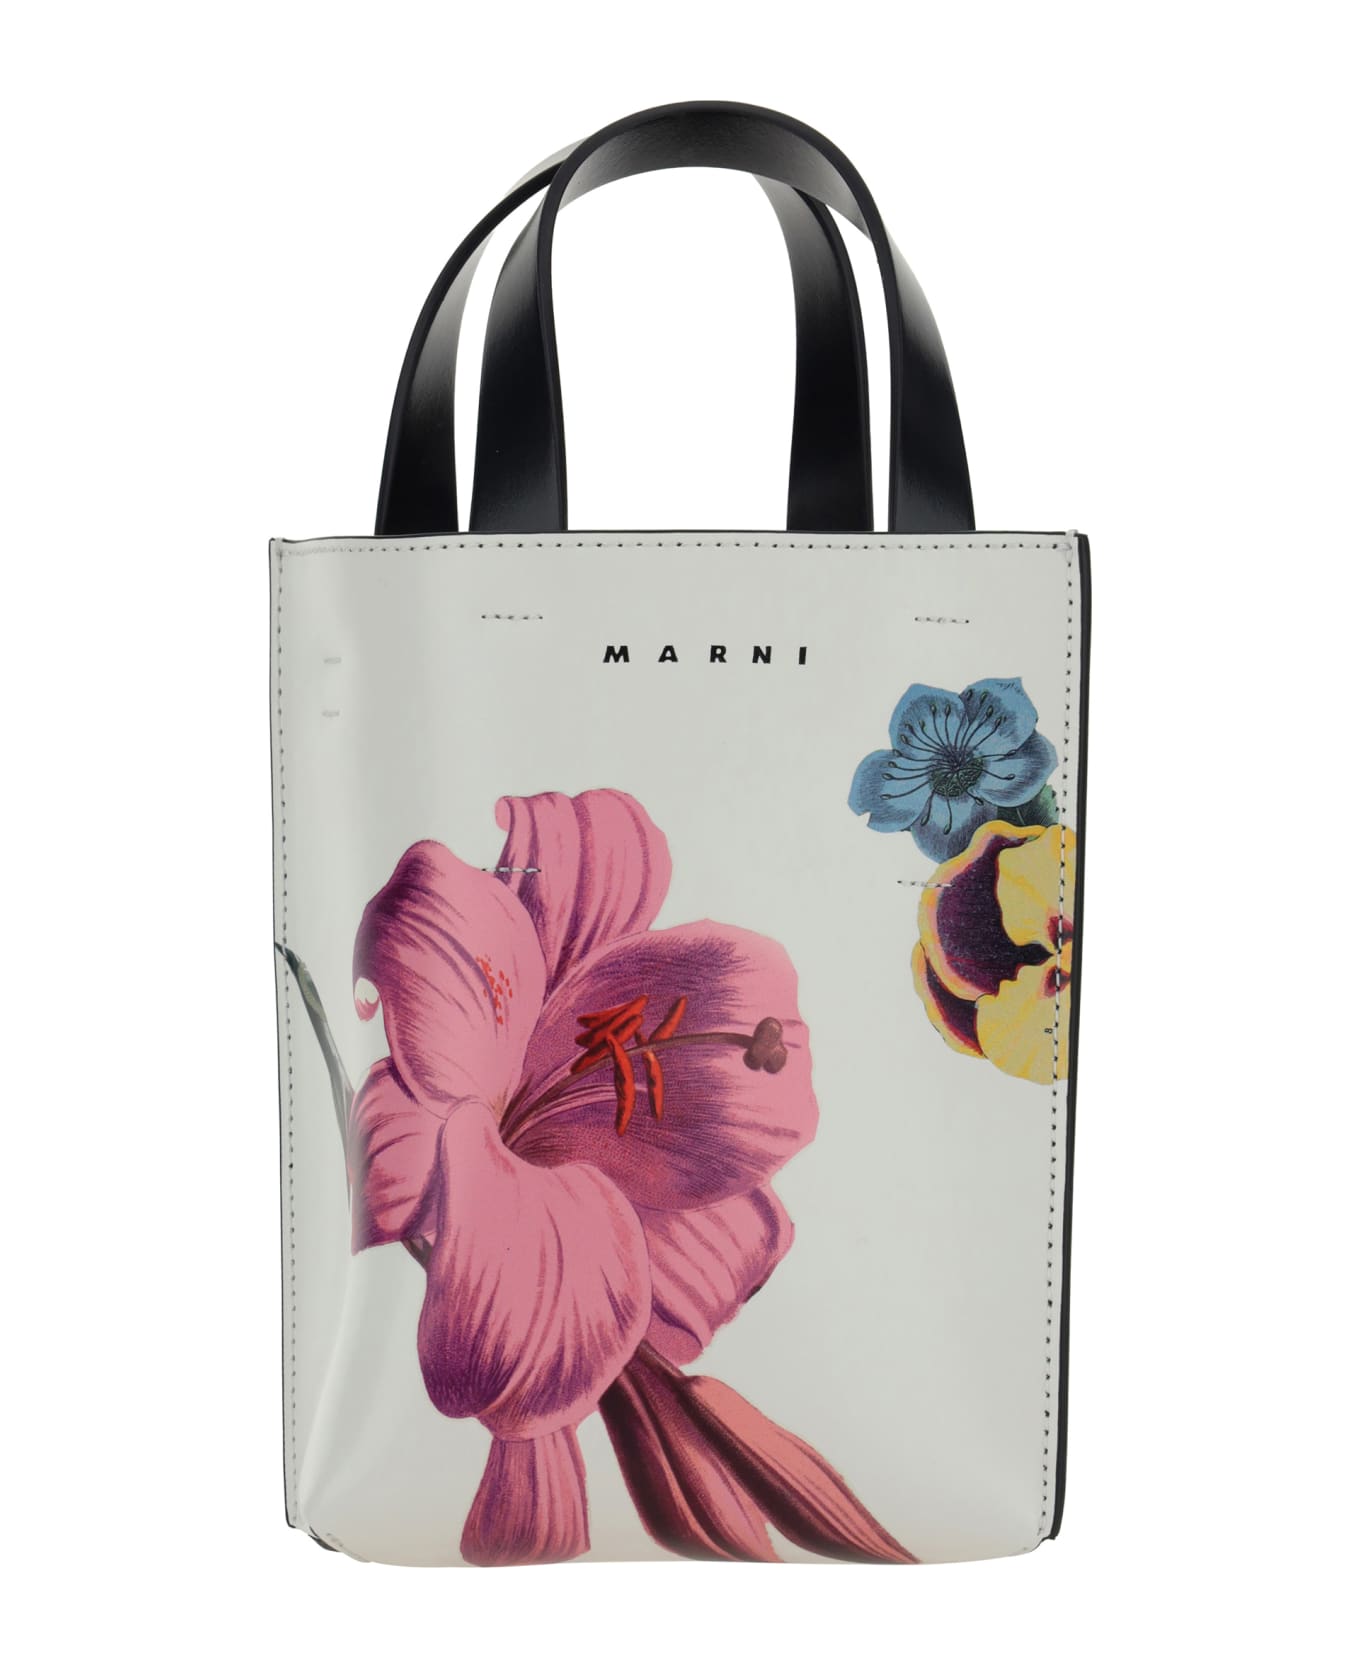 Marni Tote Handbag - Lily White/pink/black トートバッグ